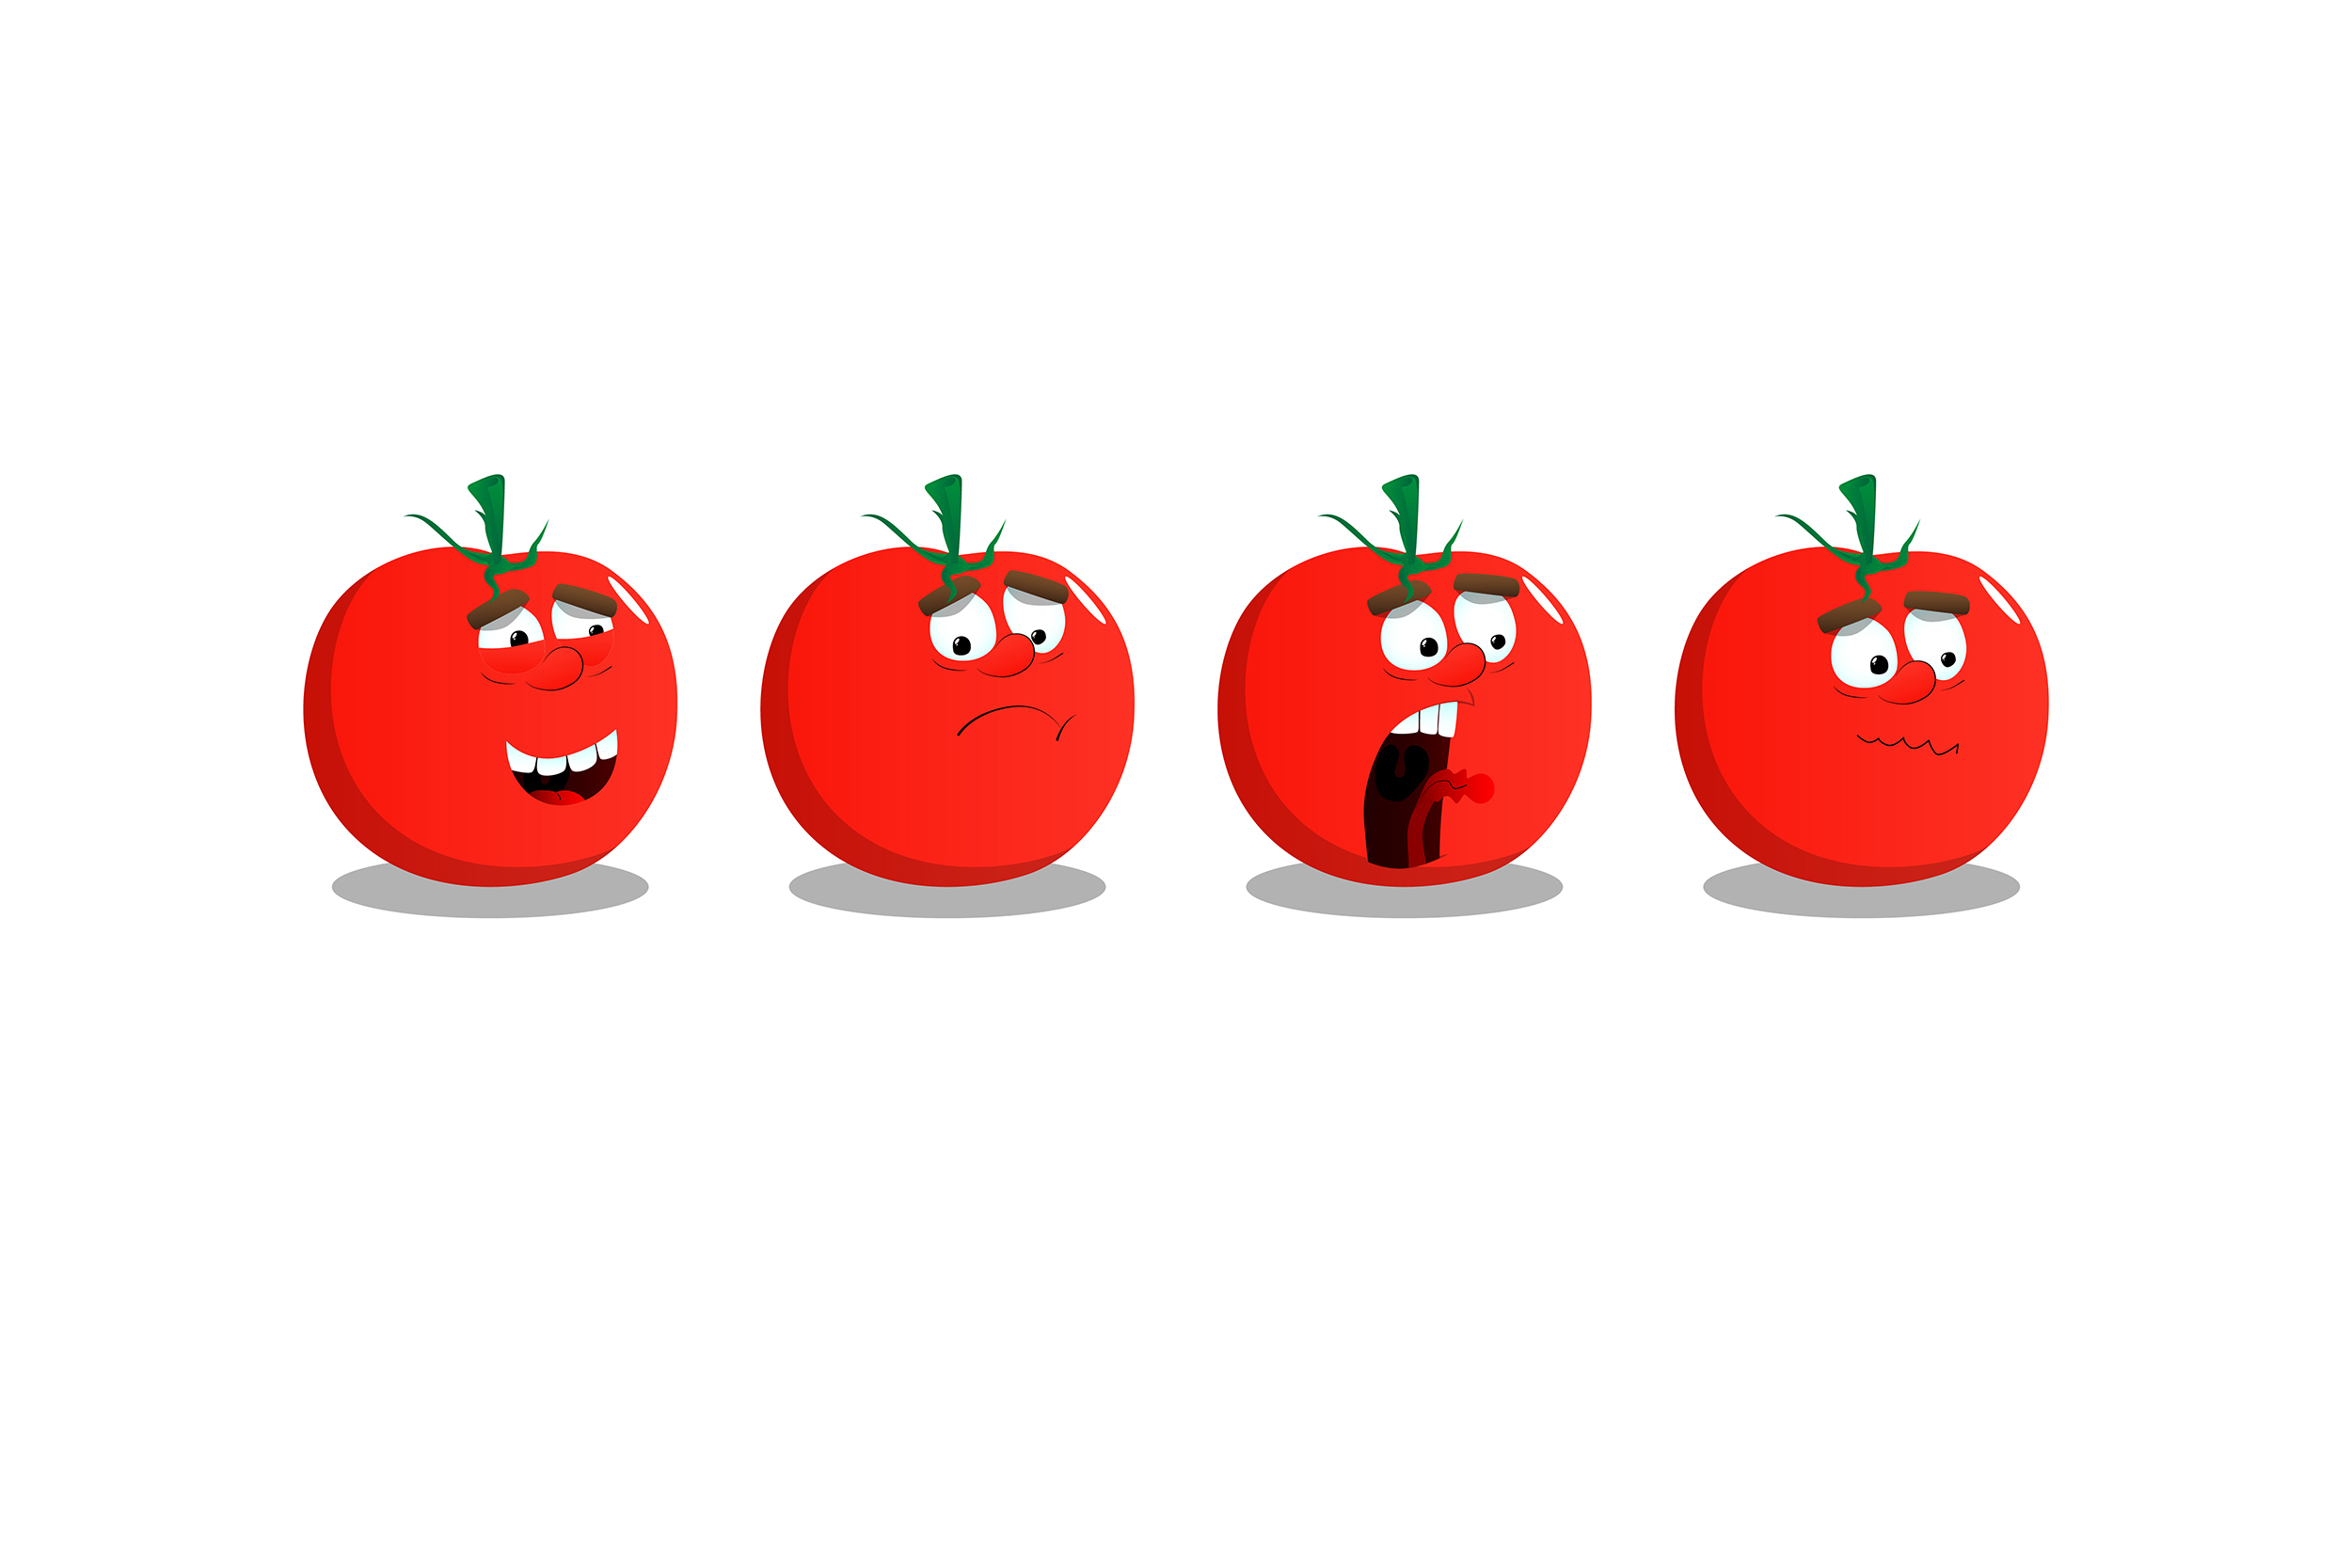 Les tomates ont des choses à nous dire.